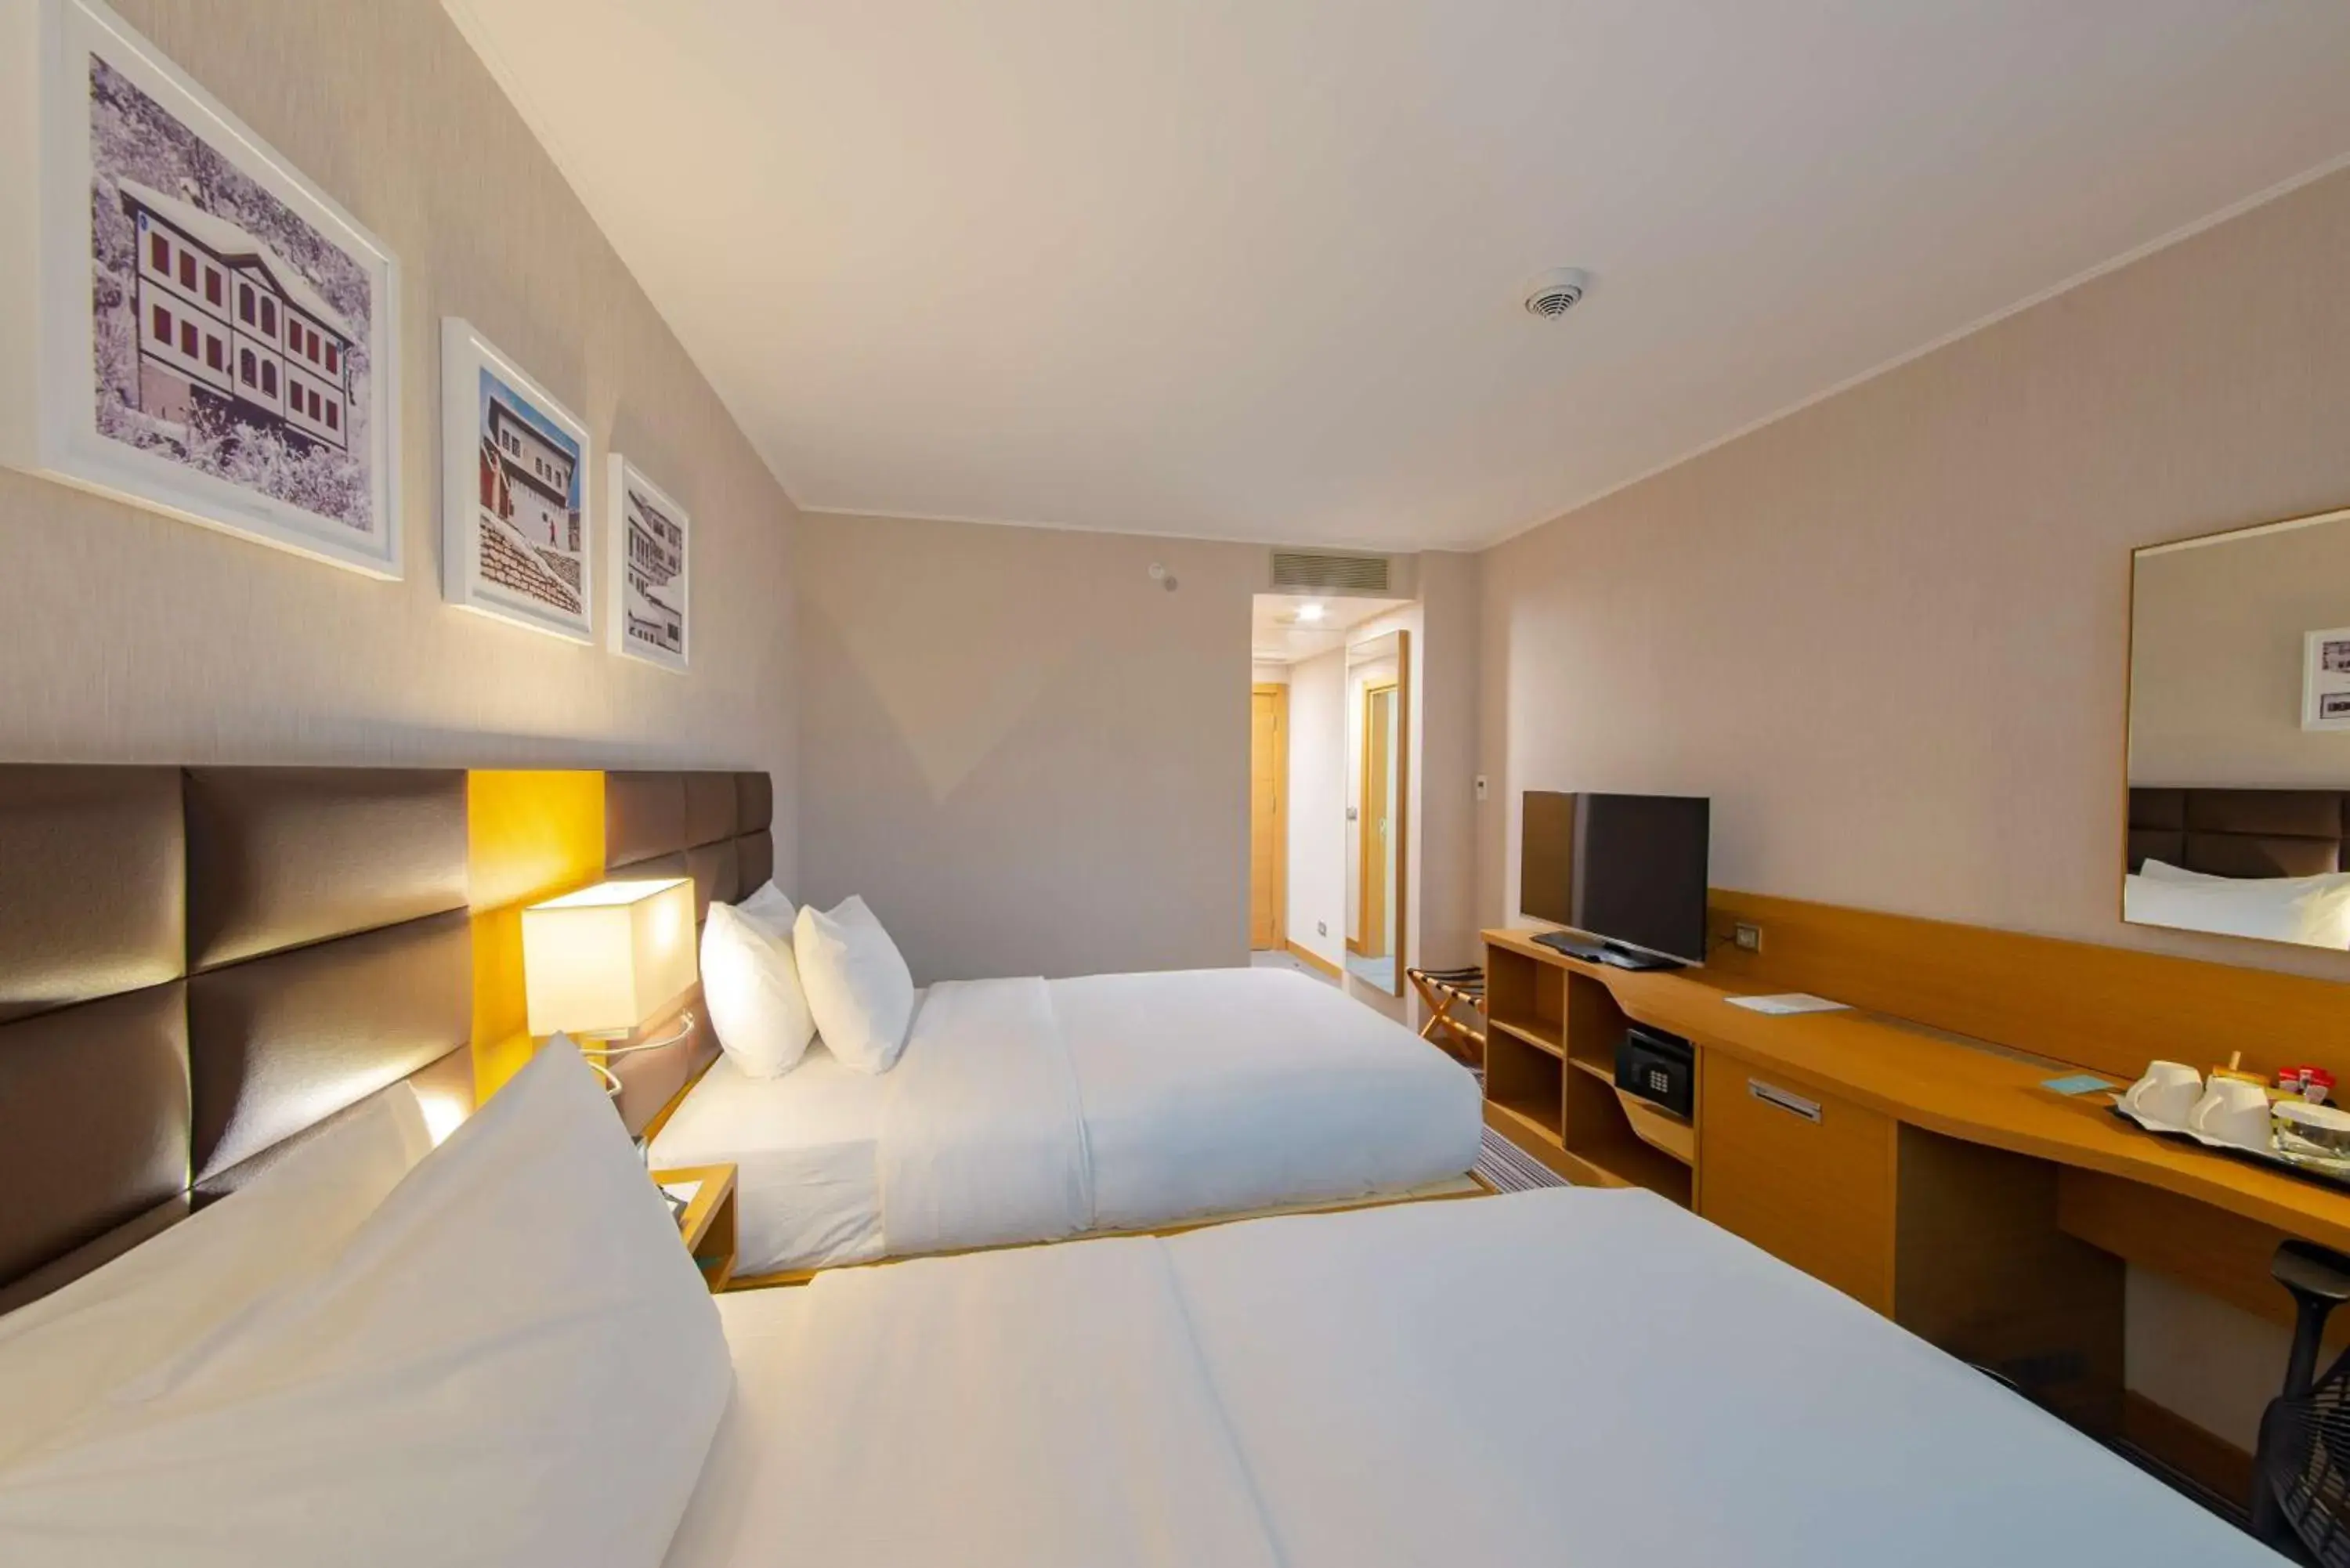 Bedroom in Hilton Garden Inn Safranbolu